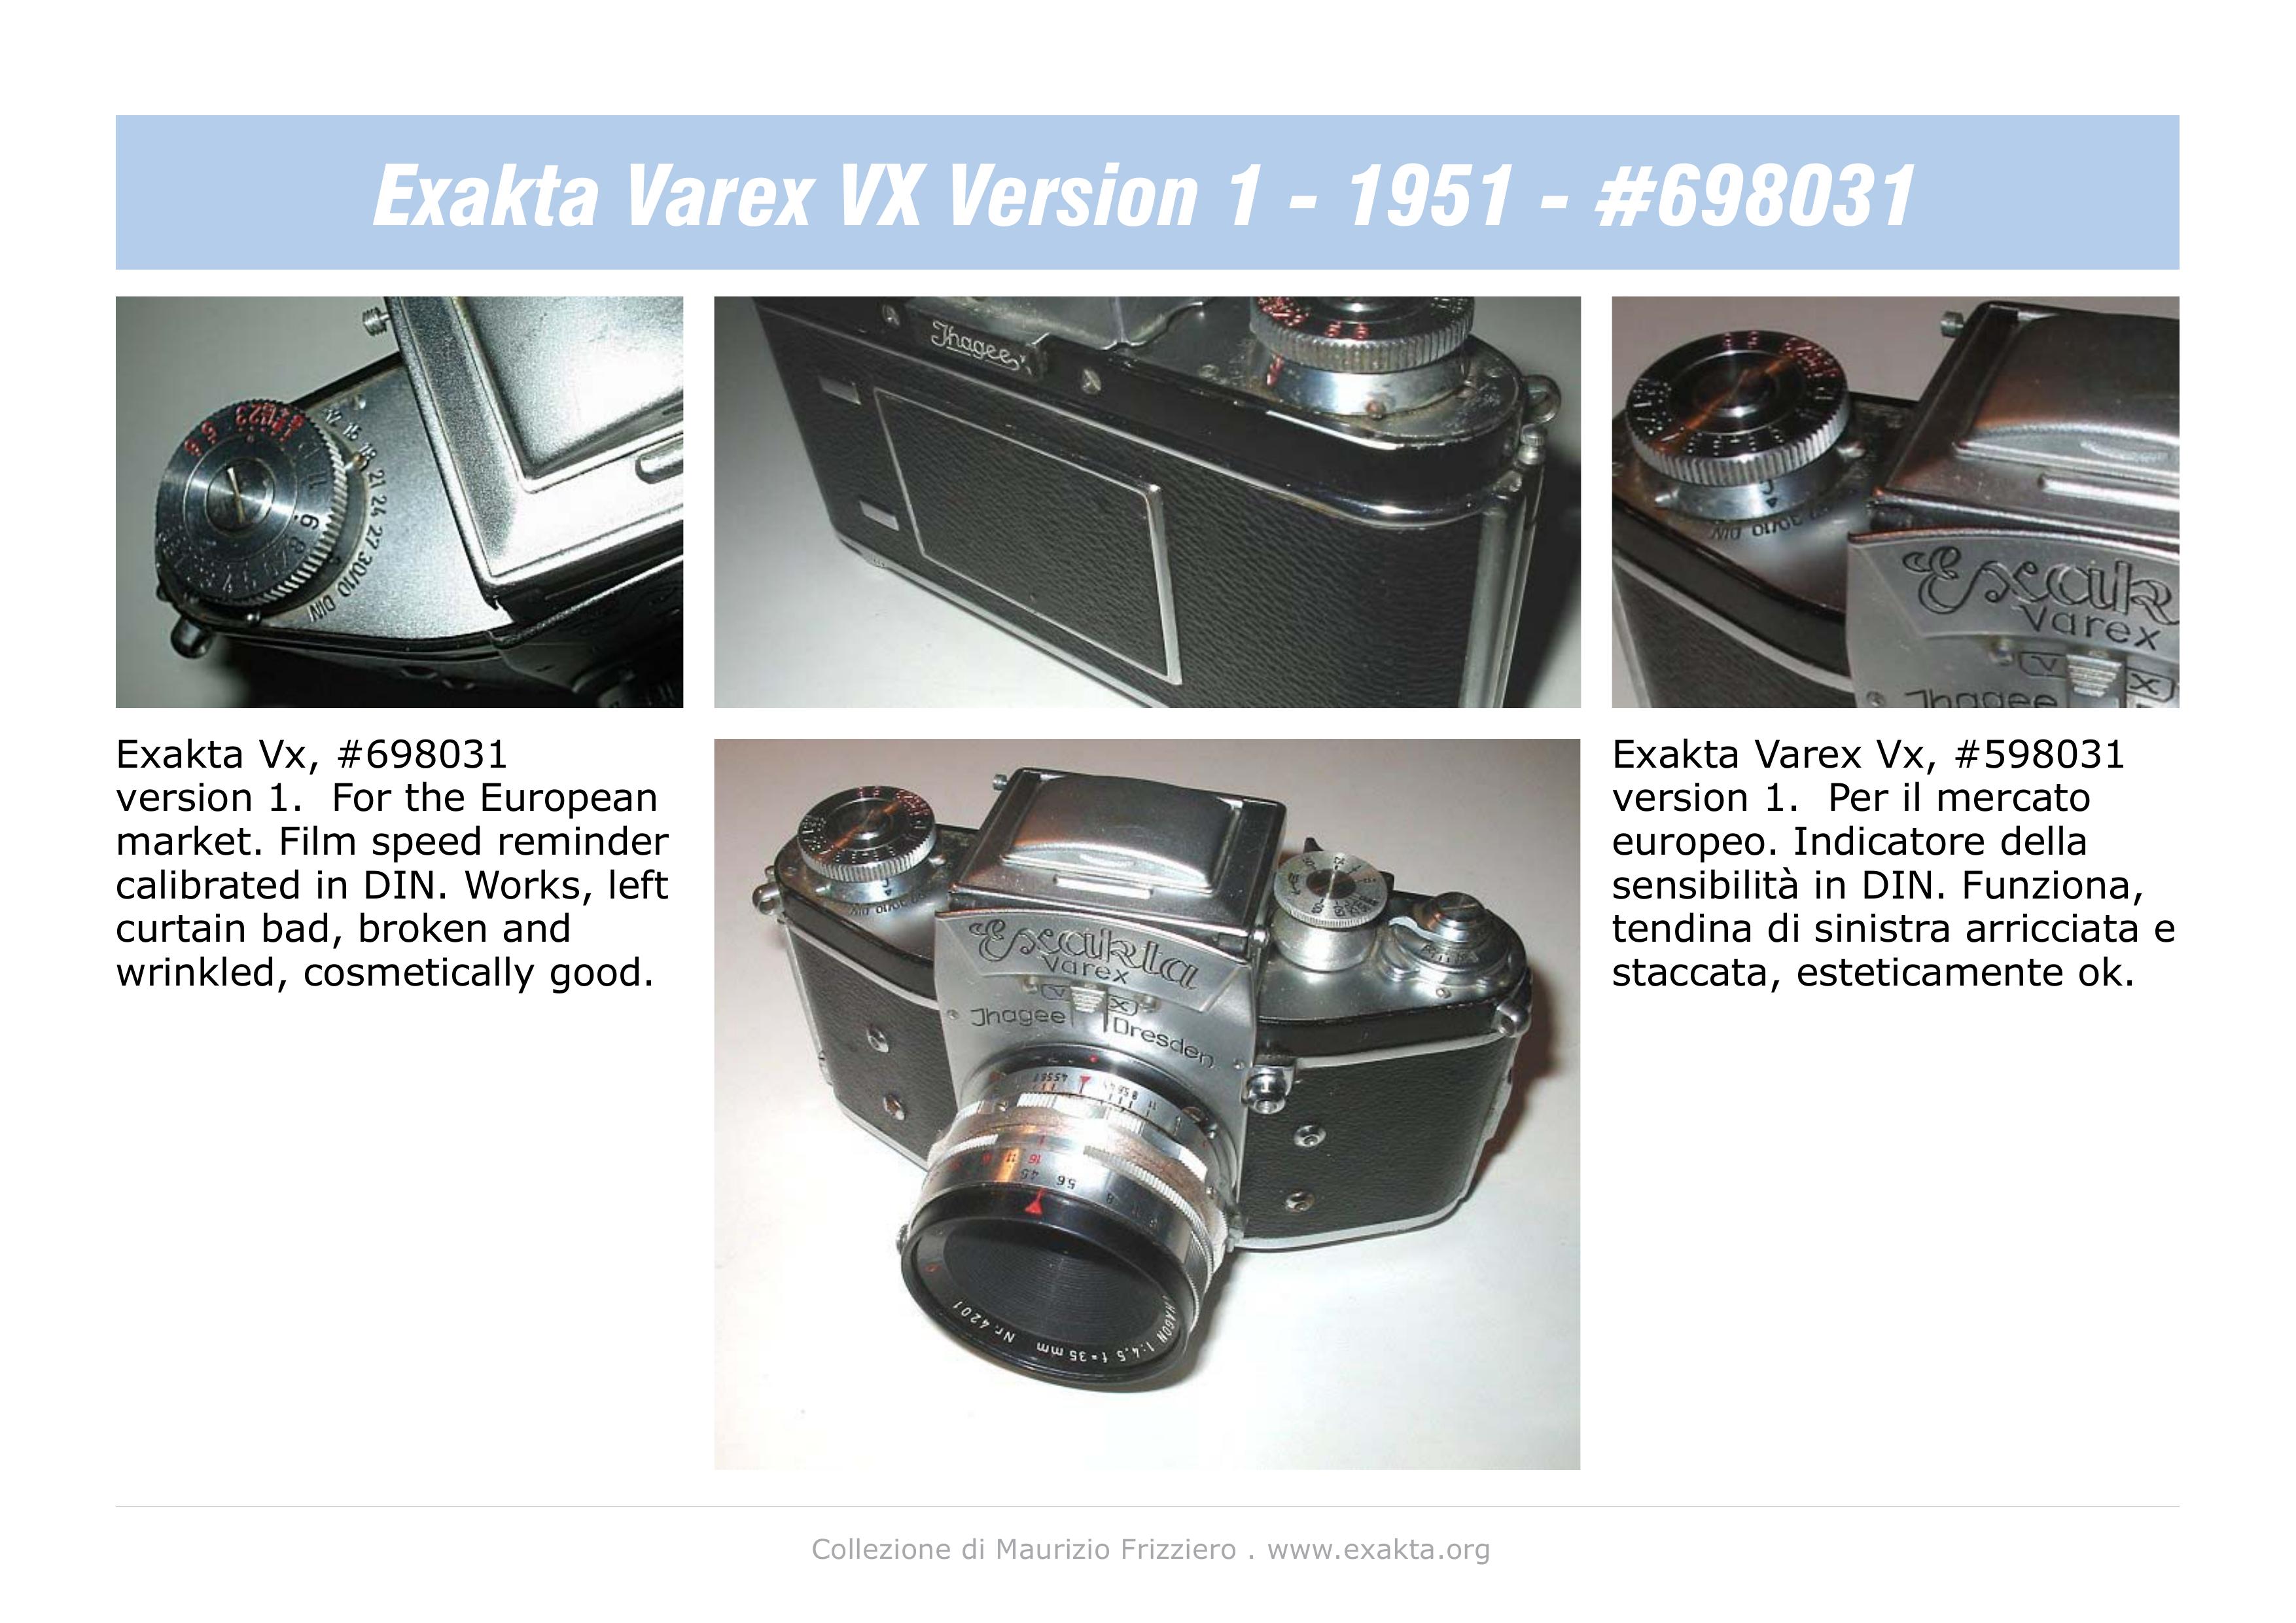 Exakta Varex VX Digital Camera User Manual